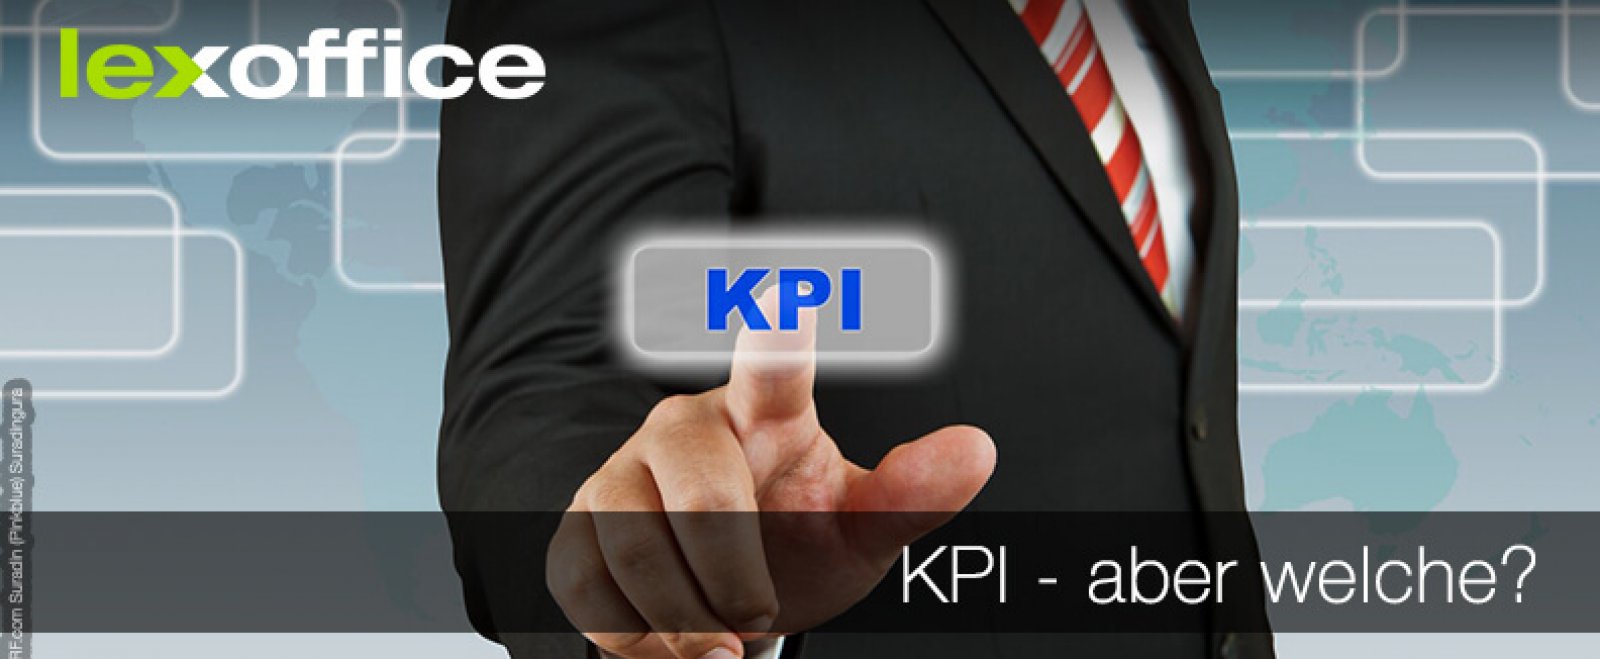 KPI – aber welche? Key Performance Indikatoren sinnvoll wählen